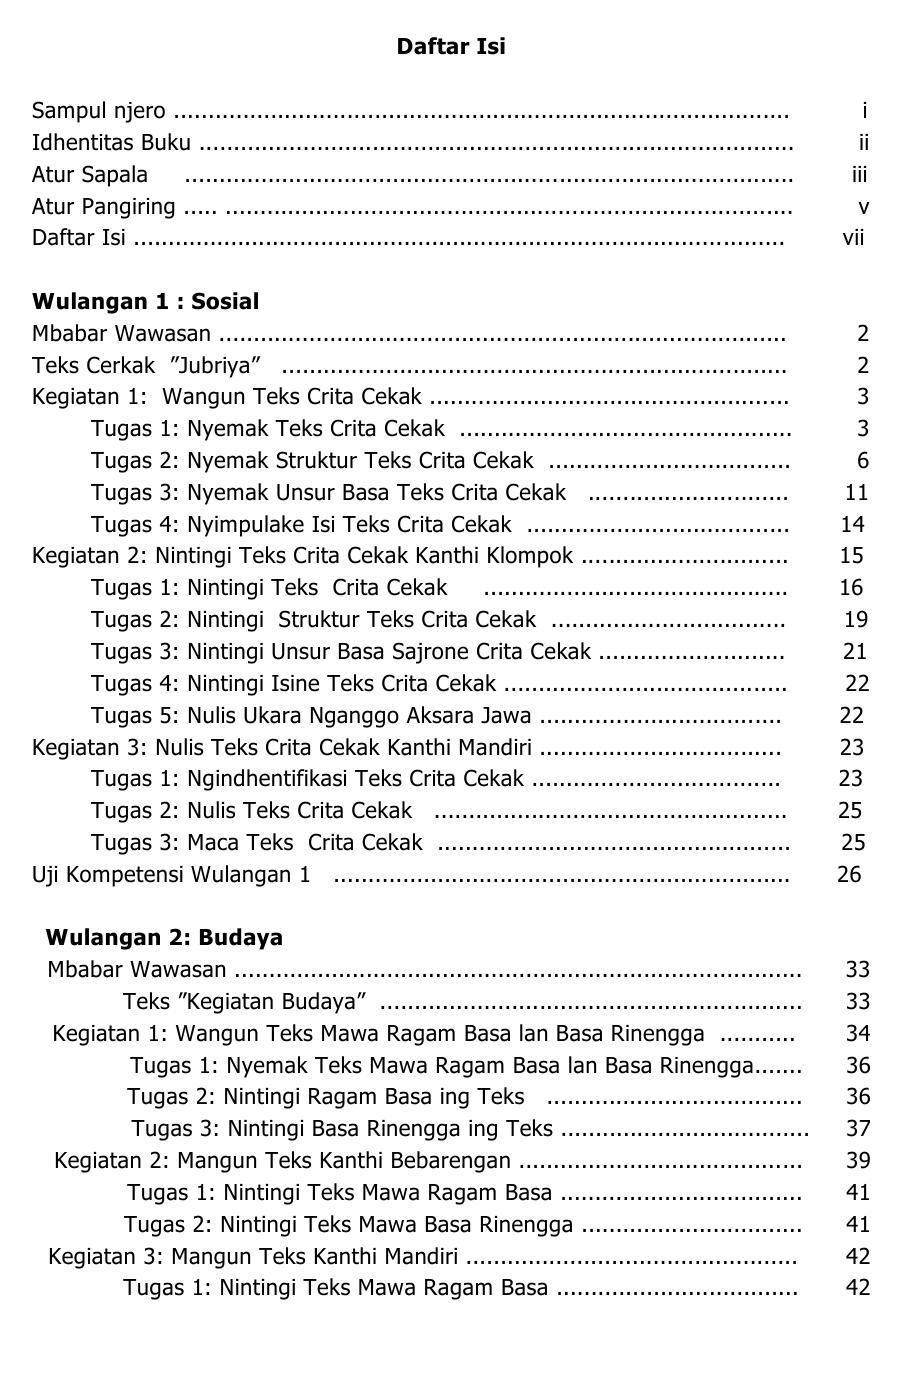 30++ Buku paket bahasa jawa kirtya basa kelas 8 pdf ideas in 2021